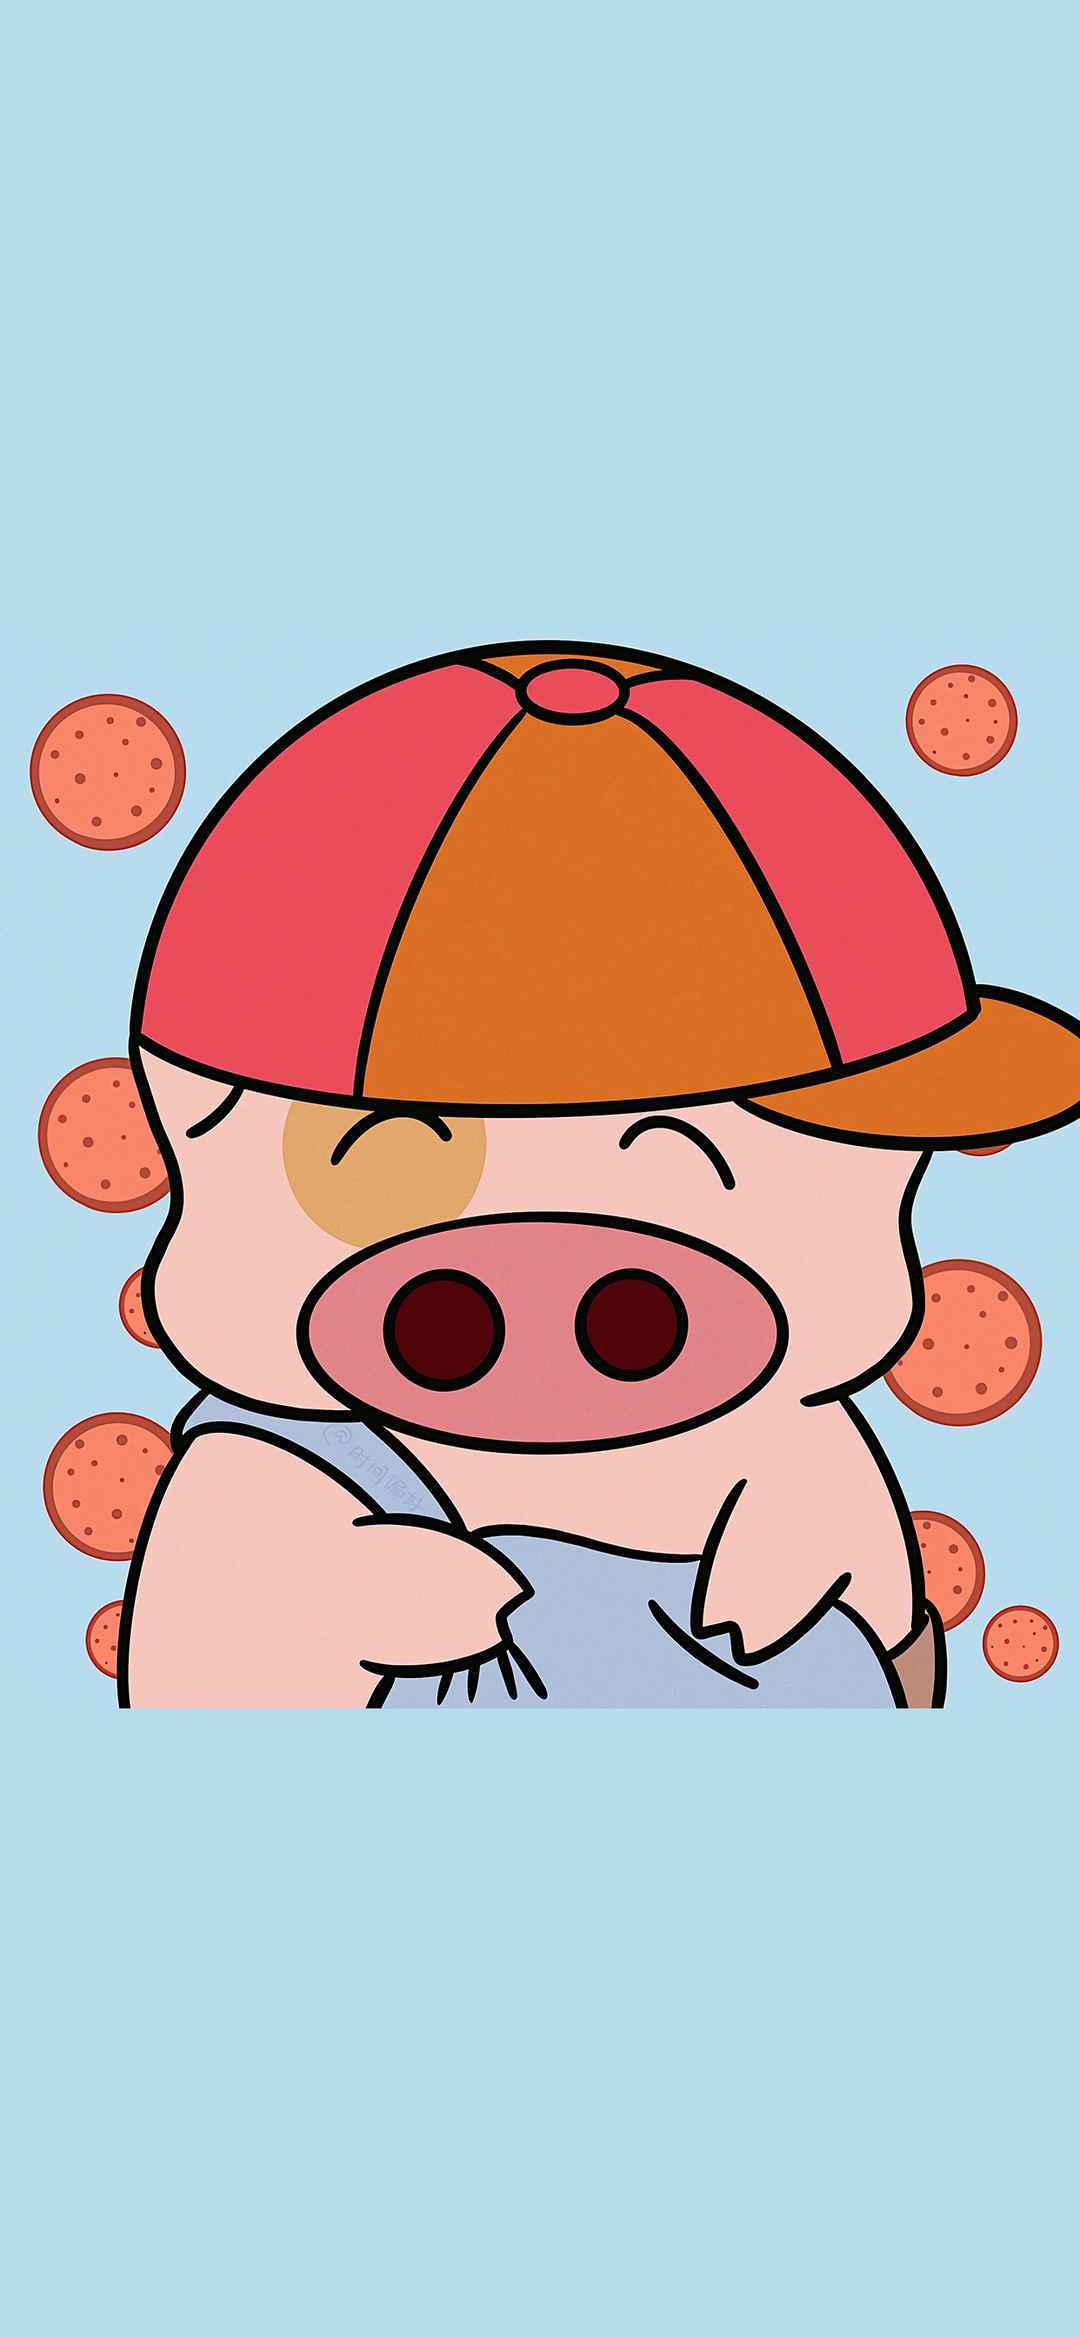 可爱卡通小猪插画手机壁纸